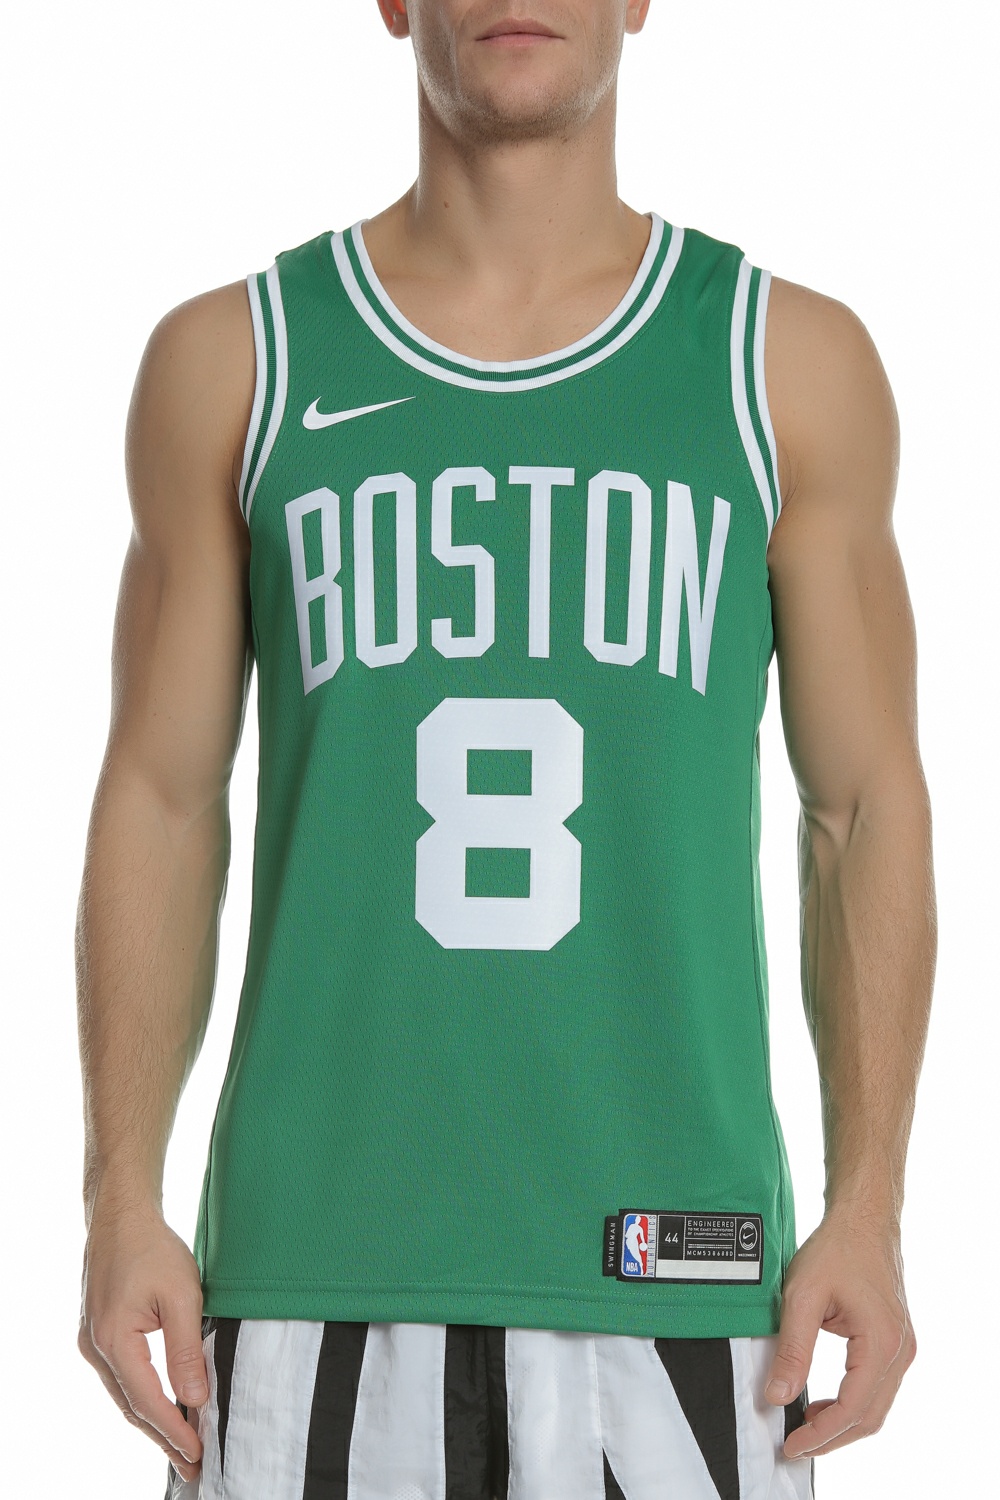 Ανδρικά/Ρούχα/Αθλητικά/T-shirt NIKE - Ανδρική φανέλα μπάσκετ SWGMN JSY ROAD πράσινη